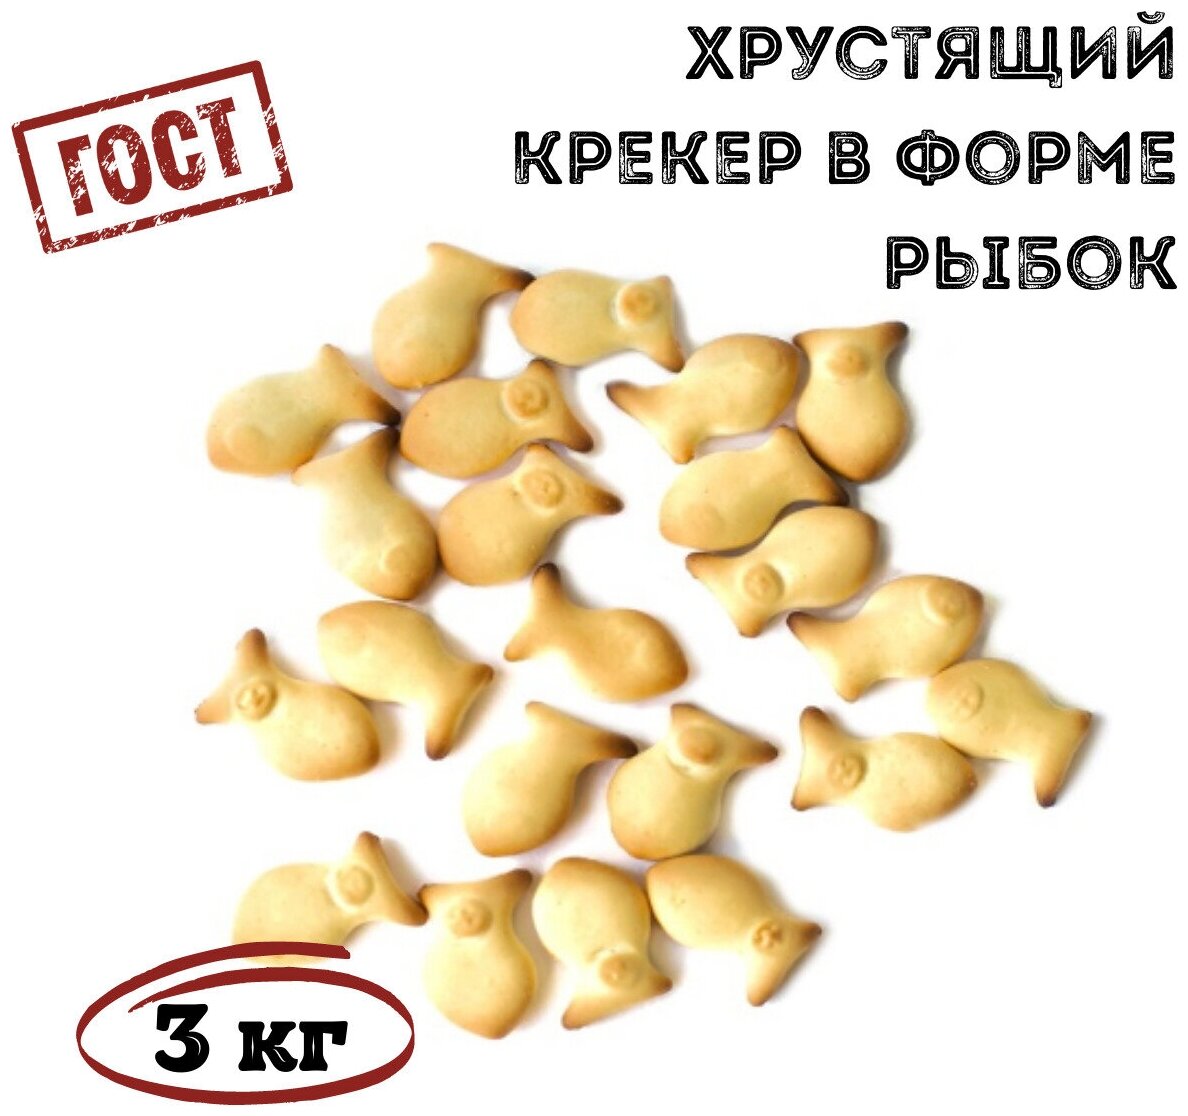 Крекер море рыбок с солью 3 кг , Томский Кондитер